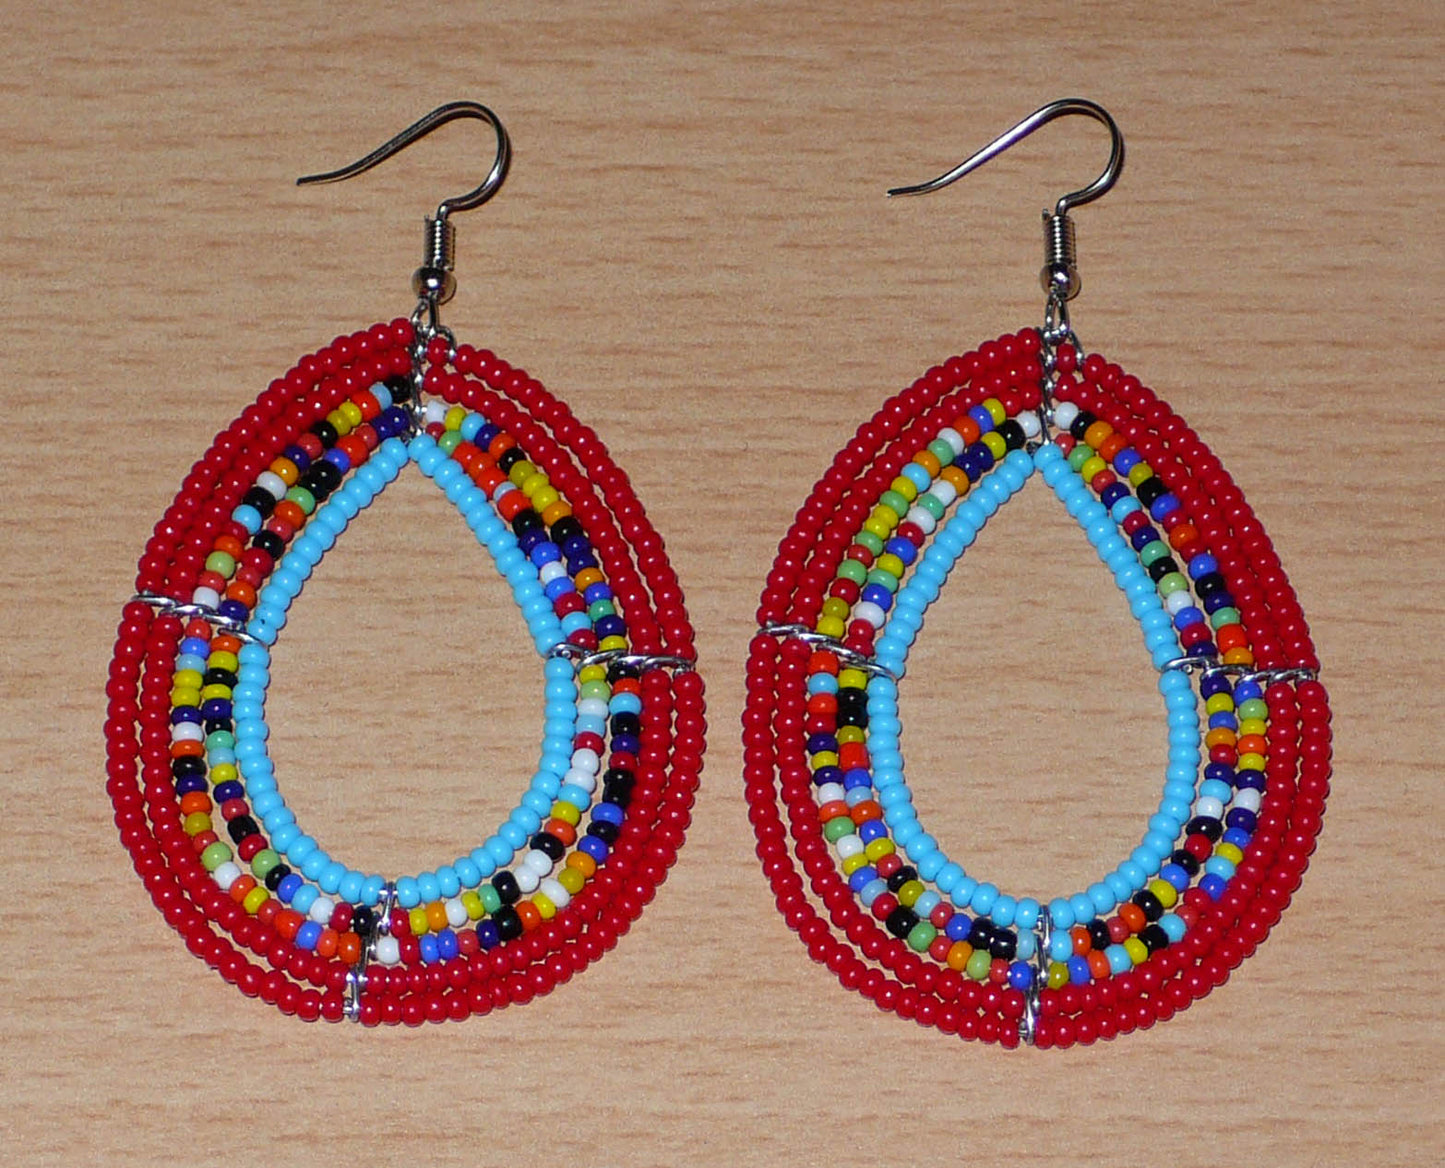 Boucles d'oreilles en forme de gouttes composées de perles de rocaille rouges, bleues et multicolores. Elles mesurent 7,5 cm de long et 4 cm de large et se portent sur des oreilles percées.